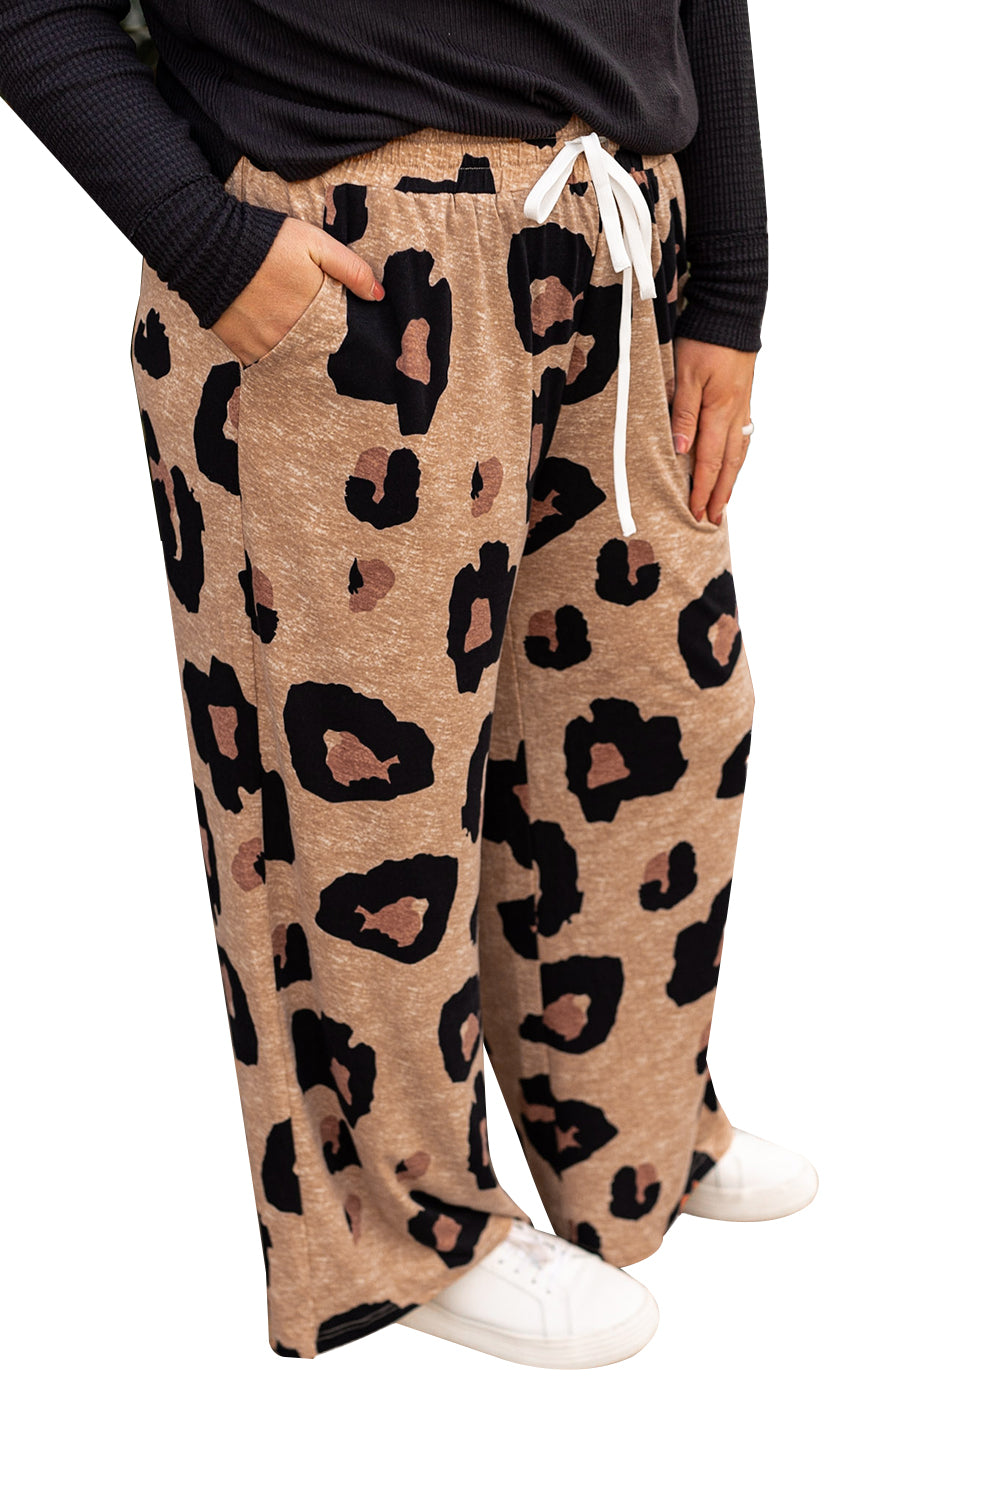 Pantalon de survêtement beige clair à imprimé léopard avec cordon de serrage, jambe large, grande taille